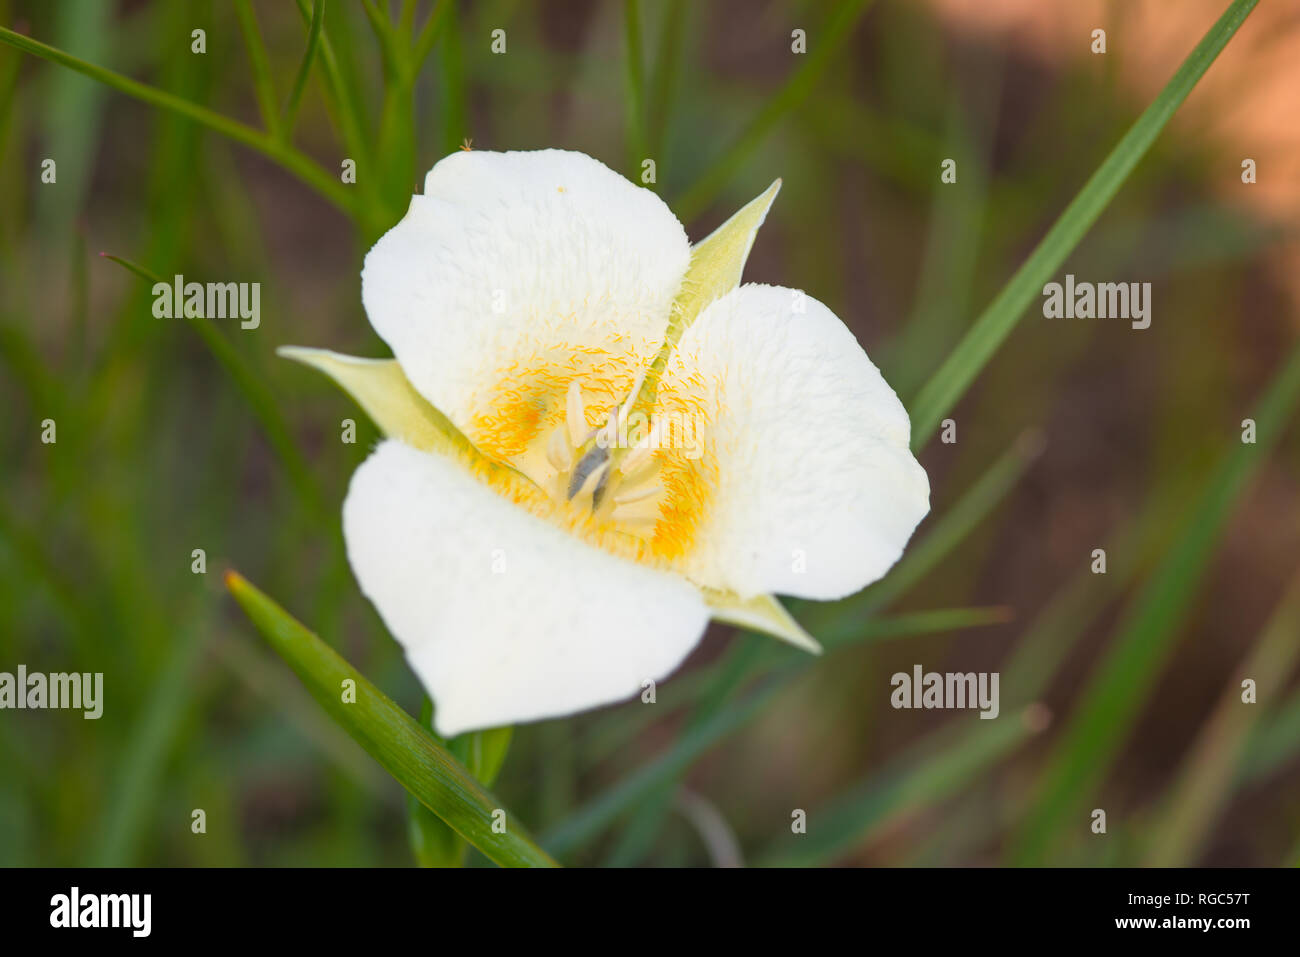 Eine einzelne Mariposa lily Blossom, Calochortus apiculatus, im Grasland des Waterton Lakes National Park, Alberta Kanada wächst. Stockfoto